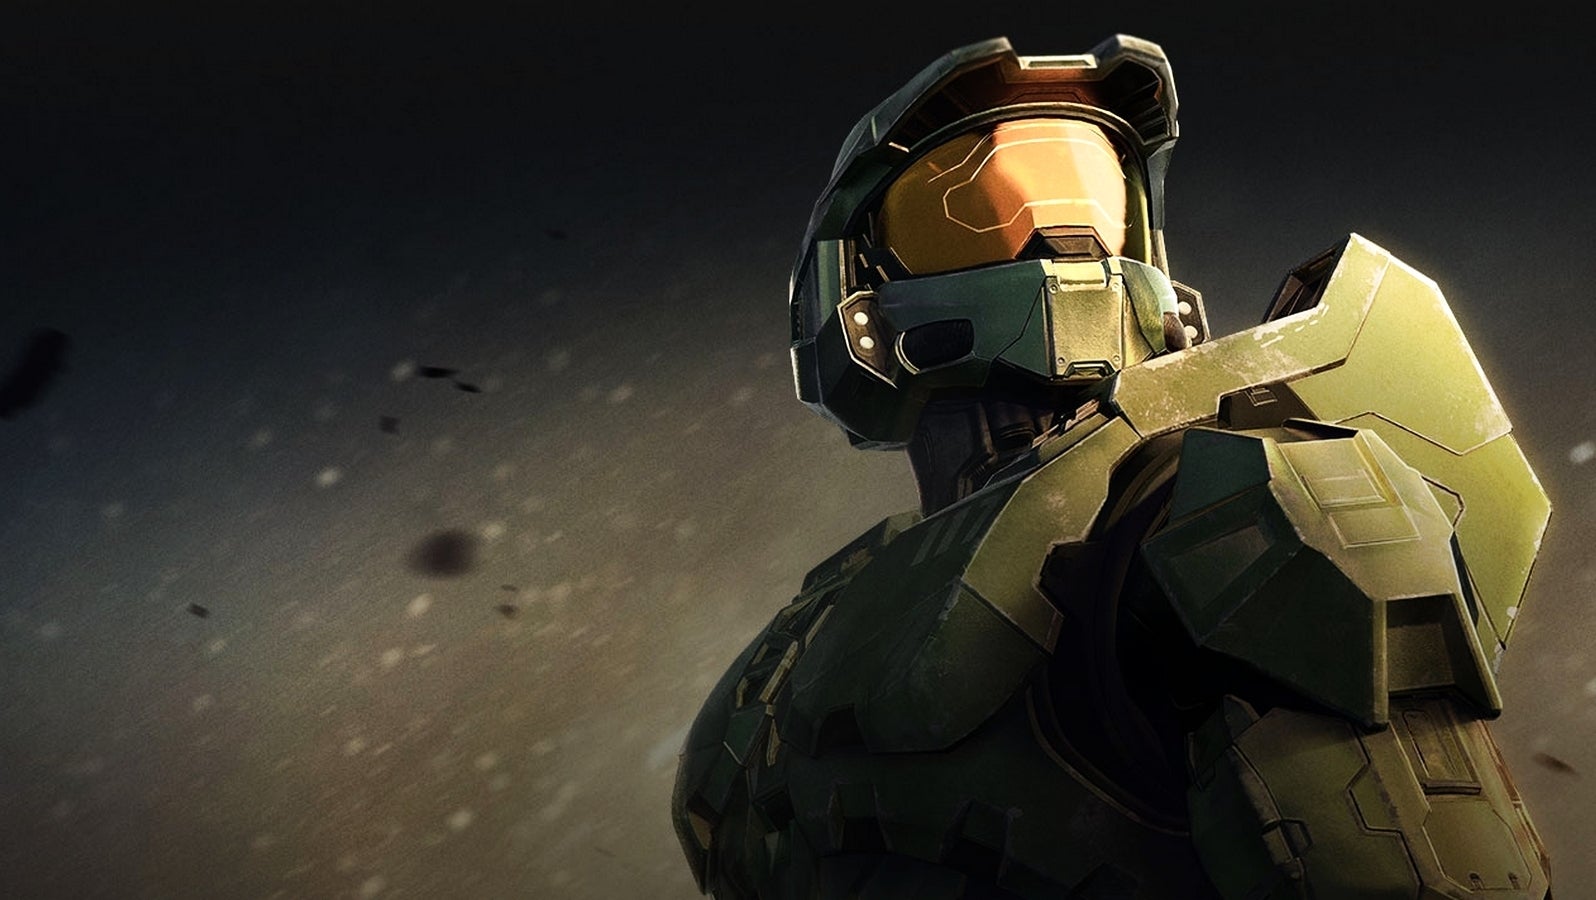 Bilder zu Neuer Teaser zur Halo-Serie aufgetaucht - Das Warten auf den ersten Trailer geht weiter